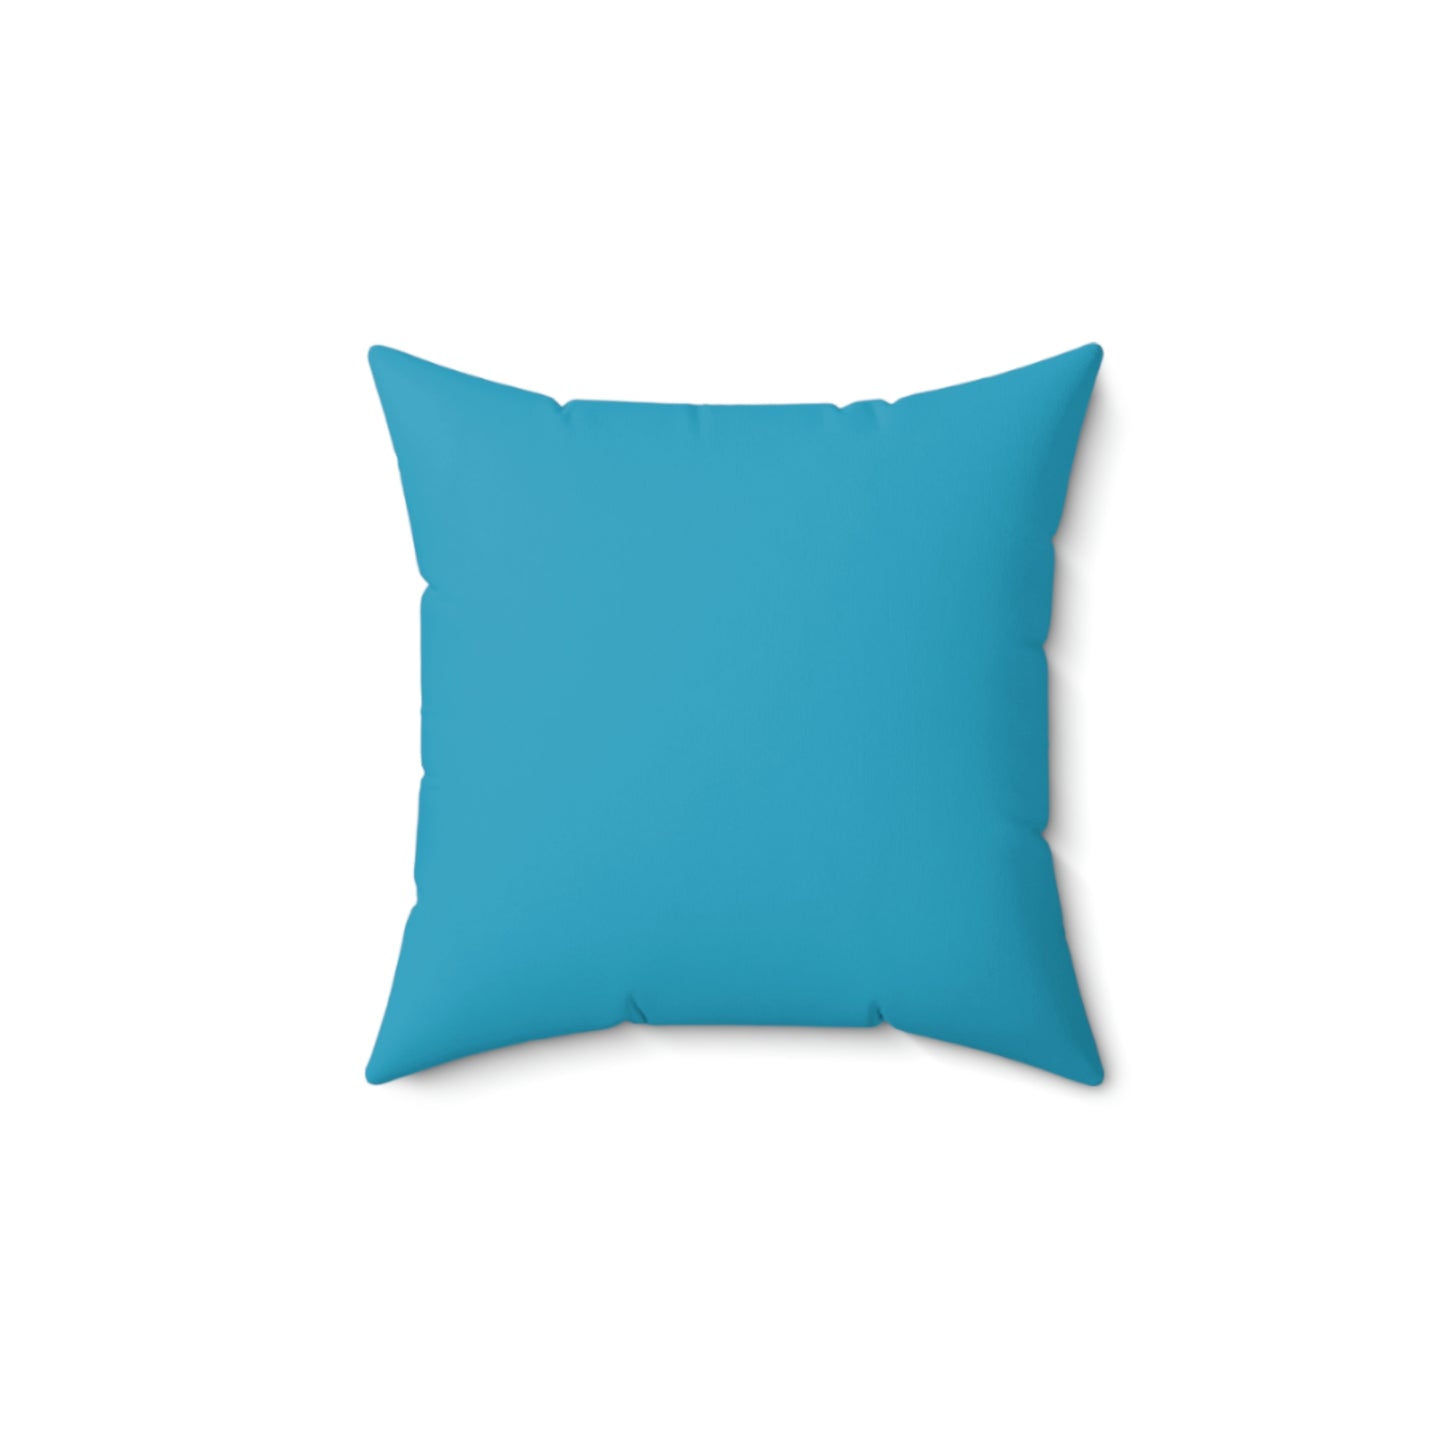 Spun Polyester Square Pillow Case “Limoncello on Turquoise”